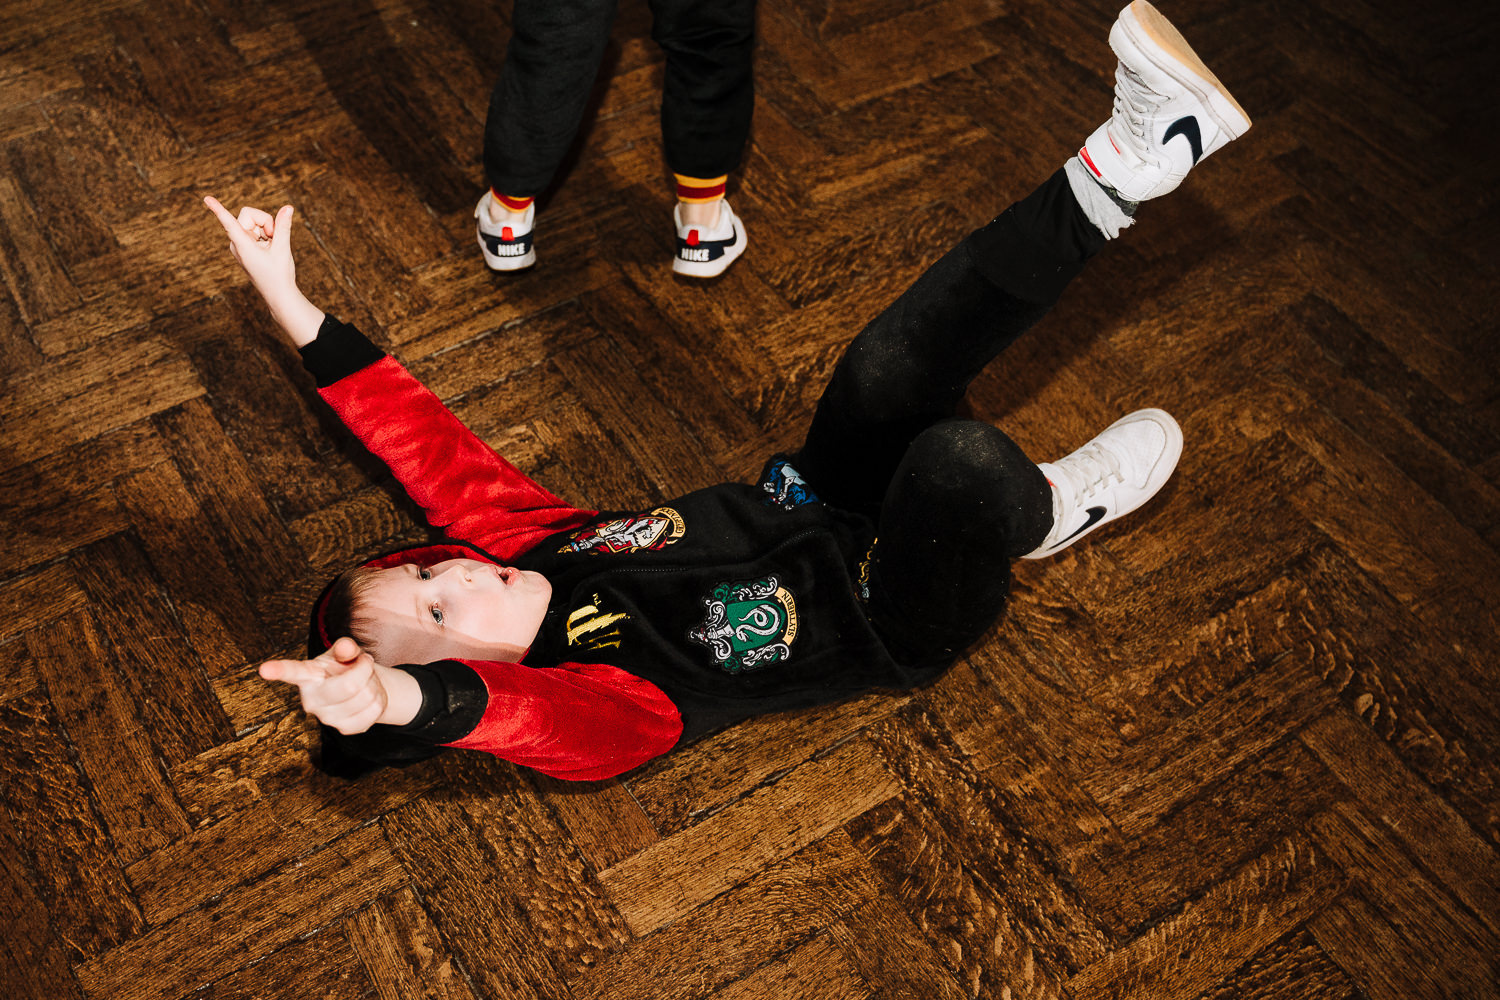 Boy on the floor dancing